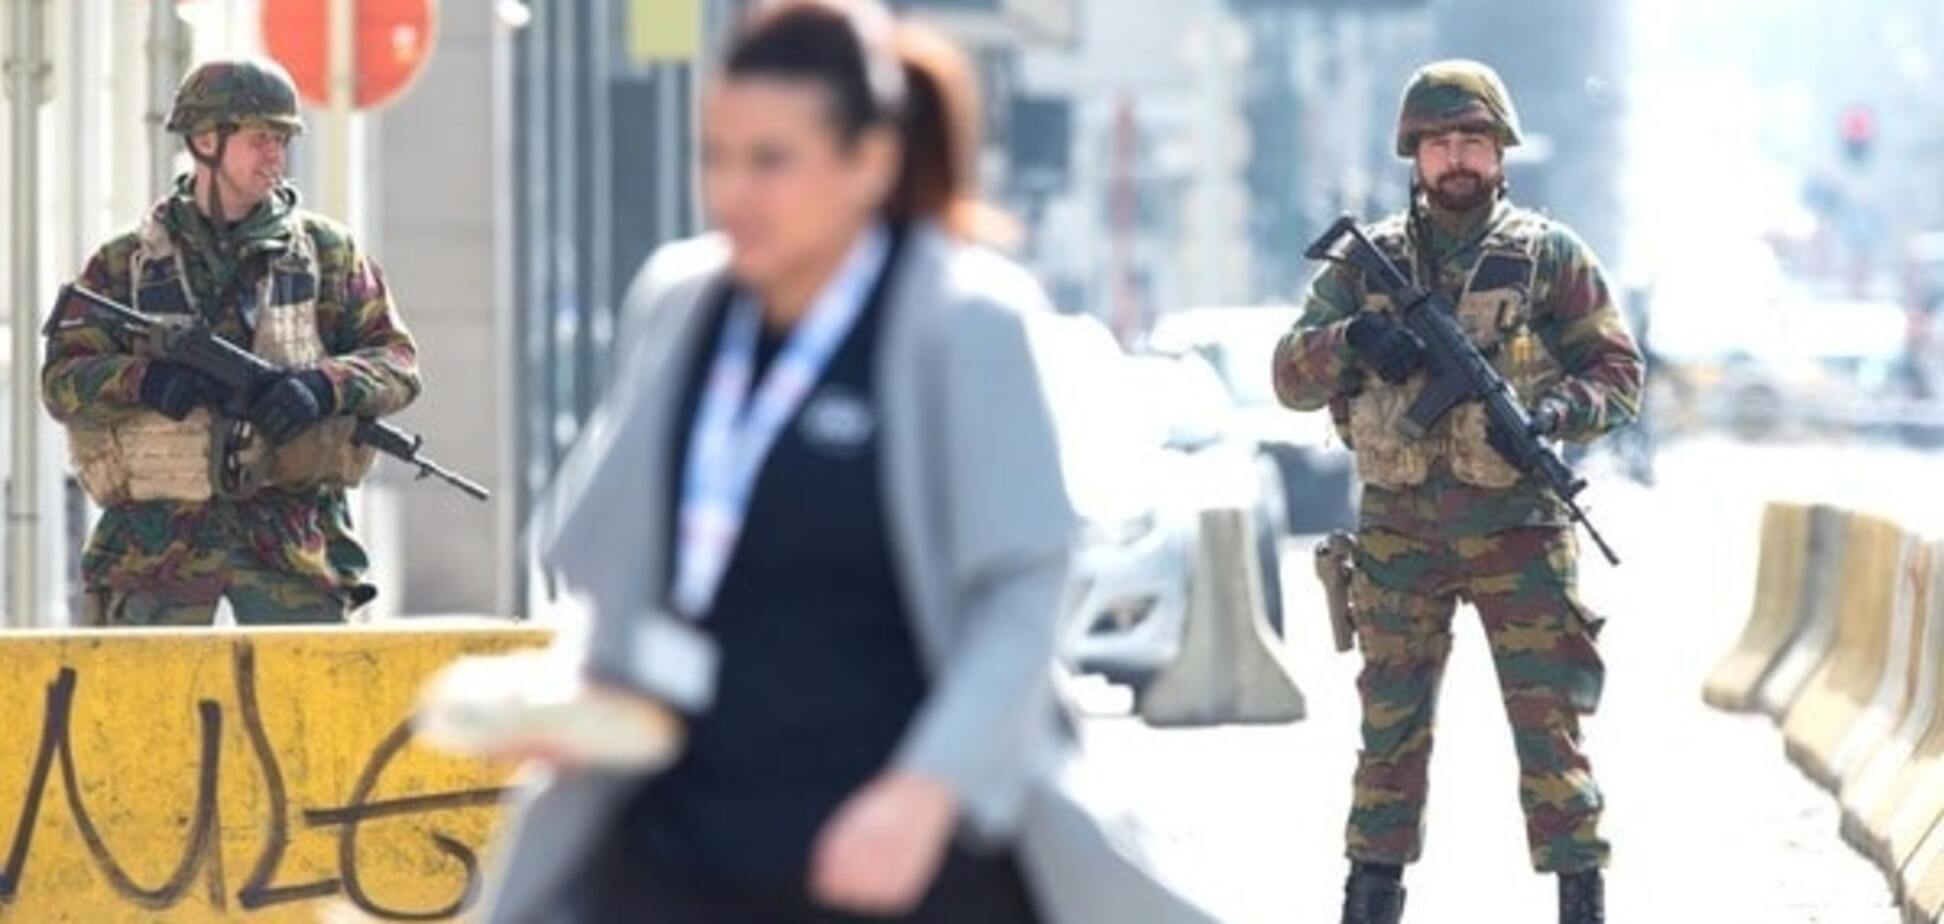 Антитеррористическая операция в Брюсселе